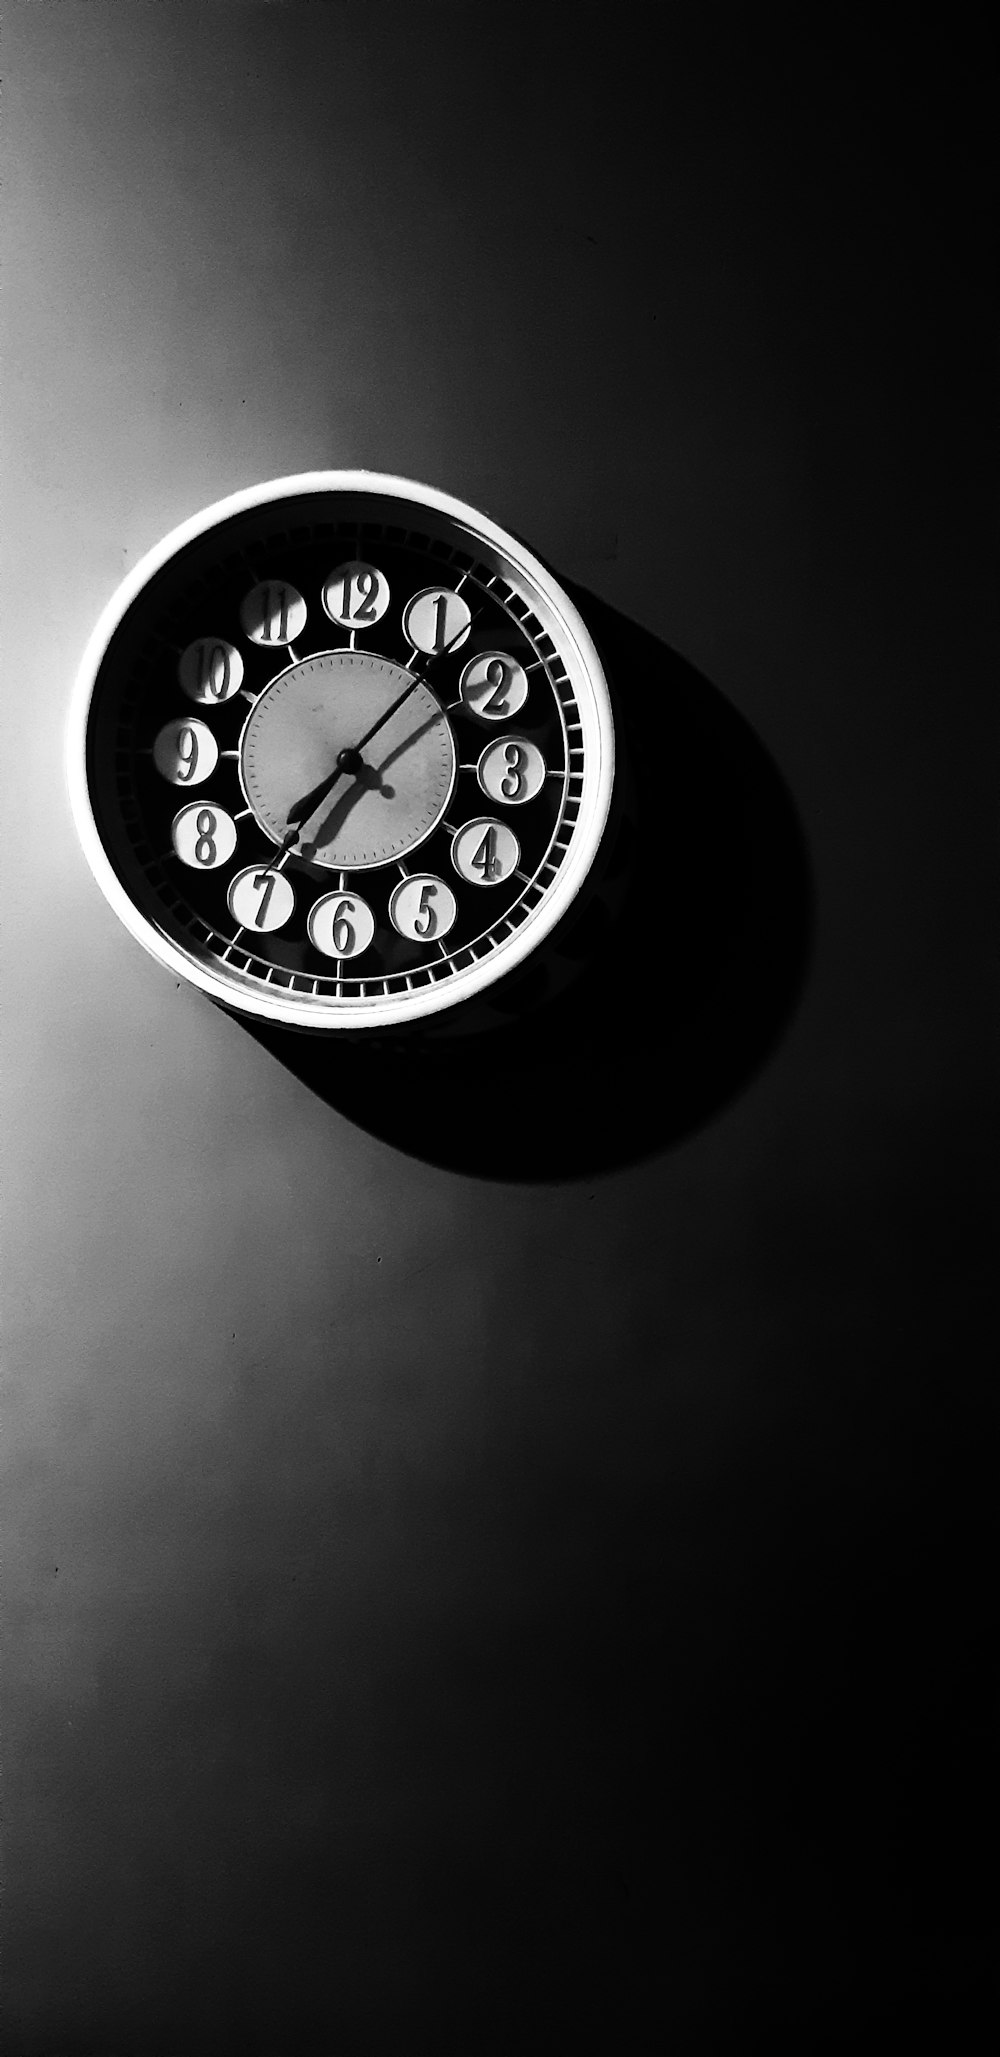 reloj de pared analógico redondo en blanco y negro